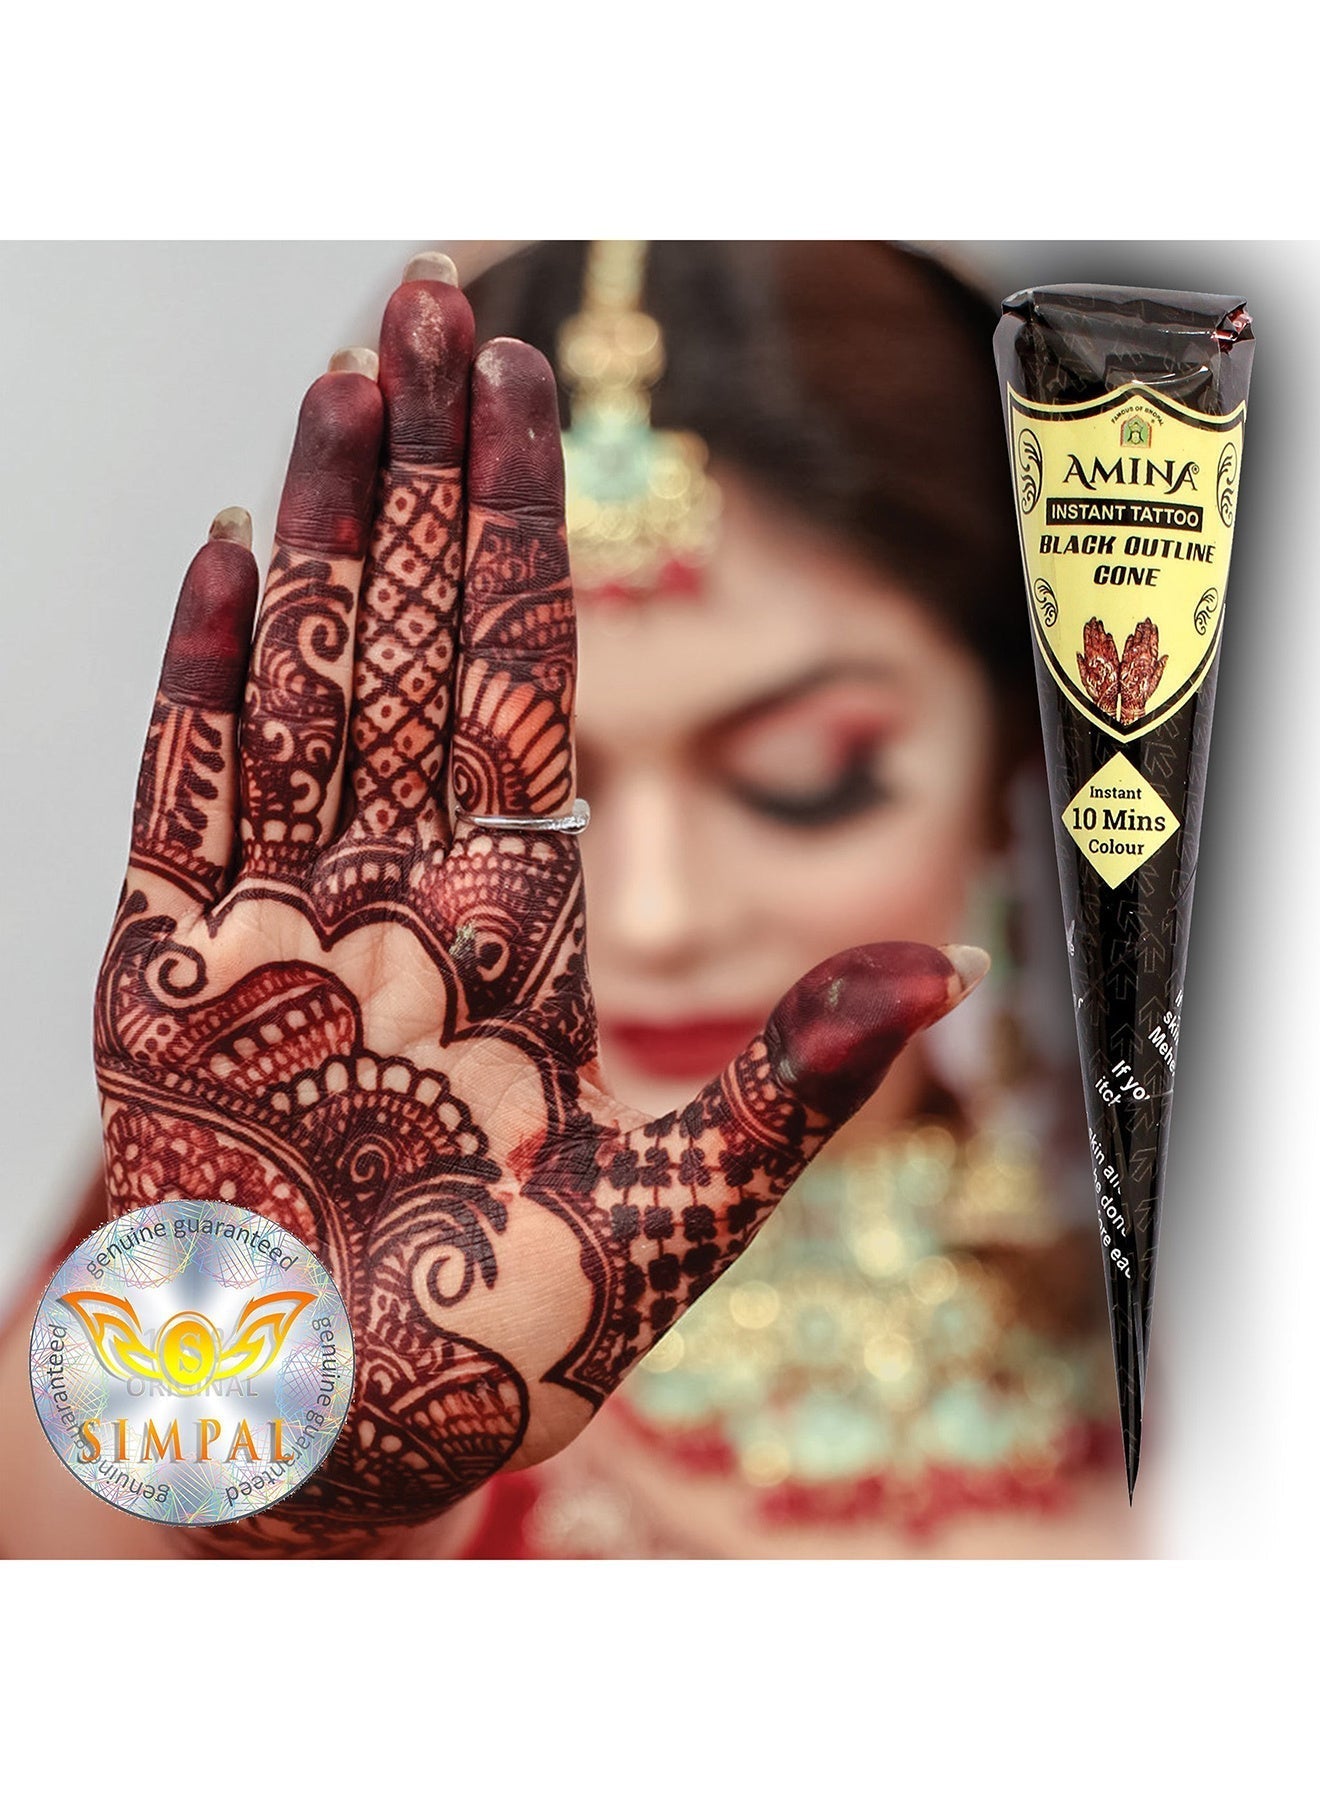 Organic Henna Cones Amina Instant Mehendi Cone Black 25 gm Value Pack of 2 